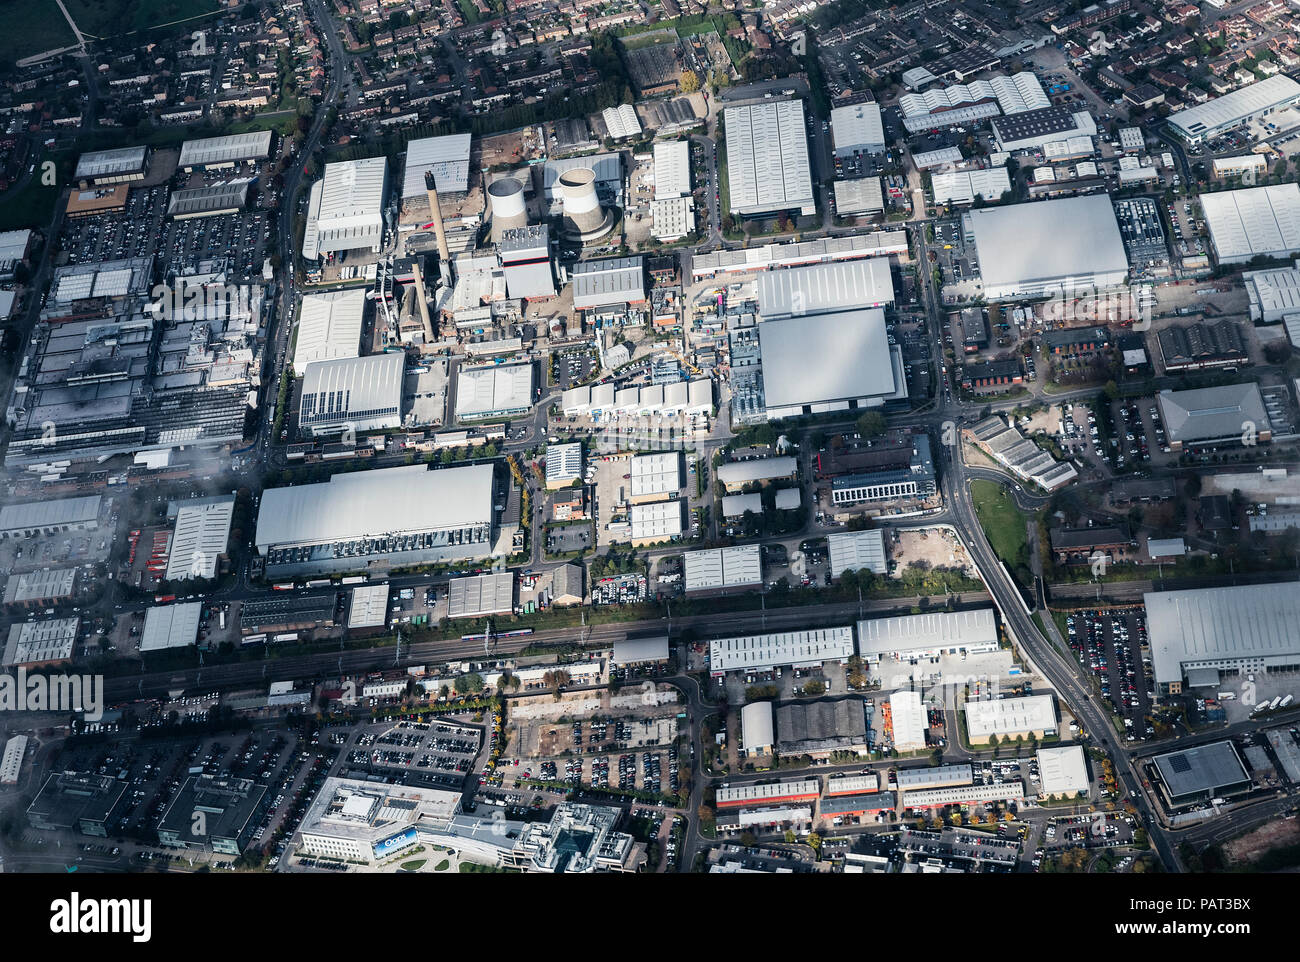 Vue aérienne de bâtiments industriels près de Londres, Angleterre. Banque D'Images